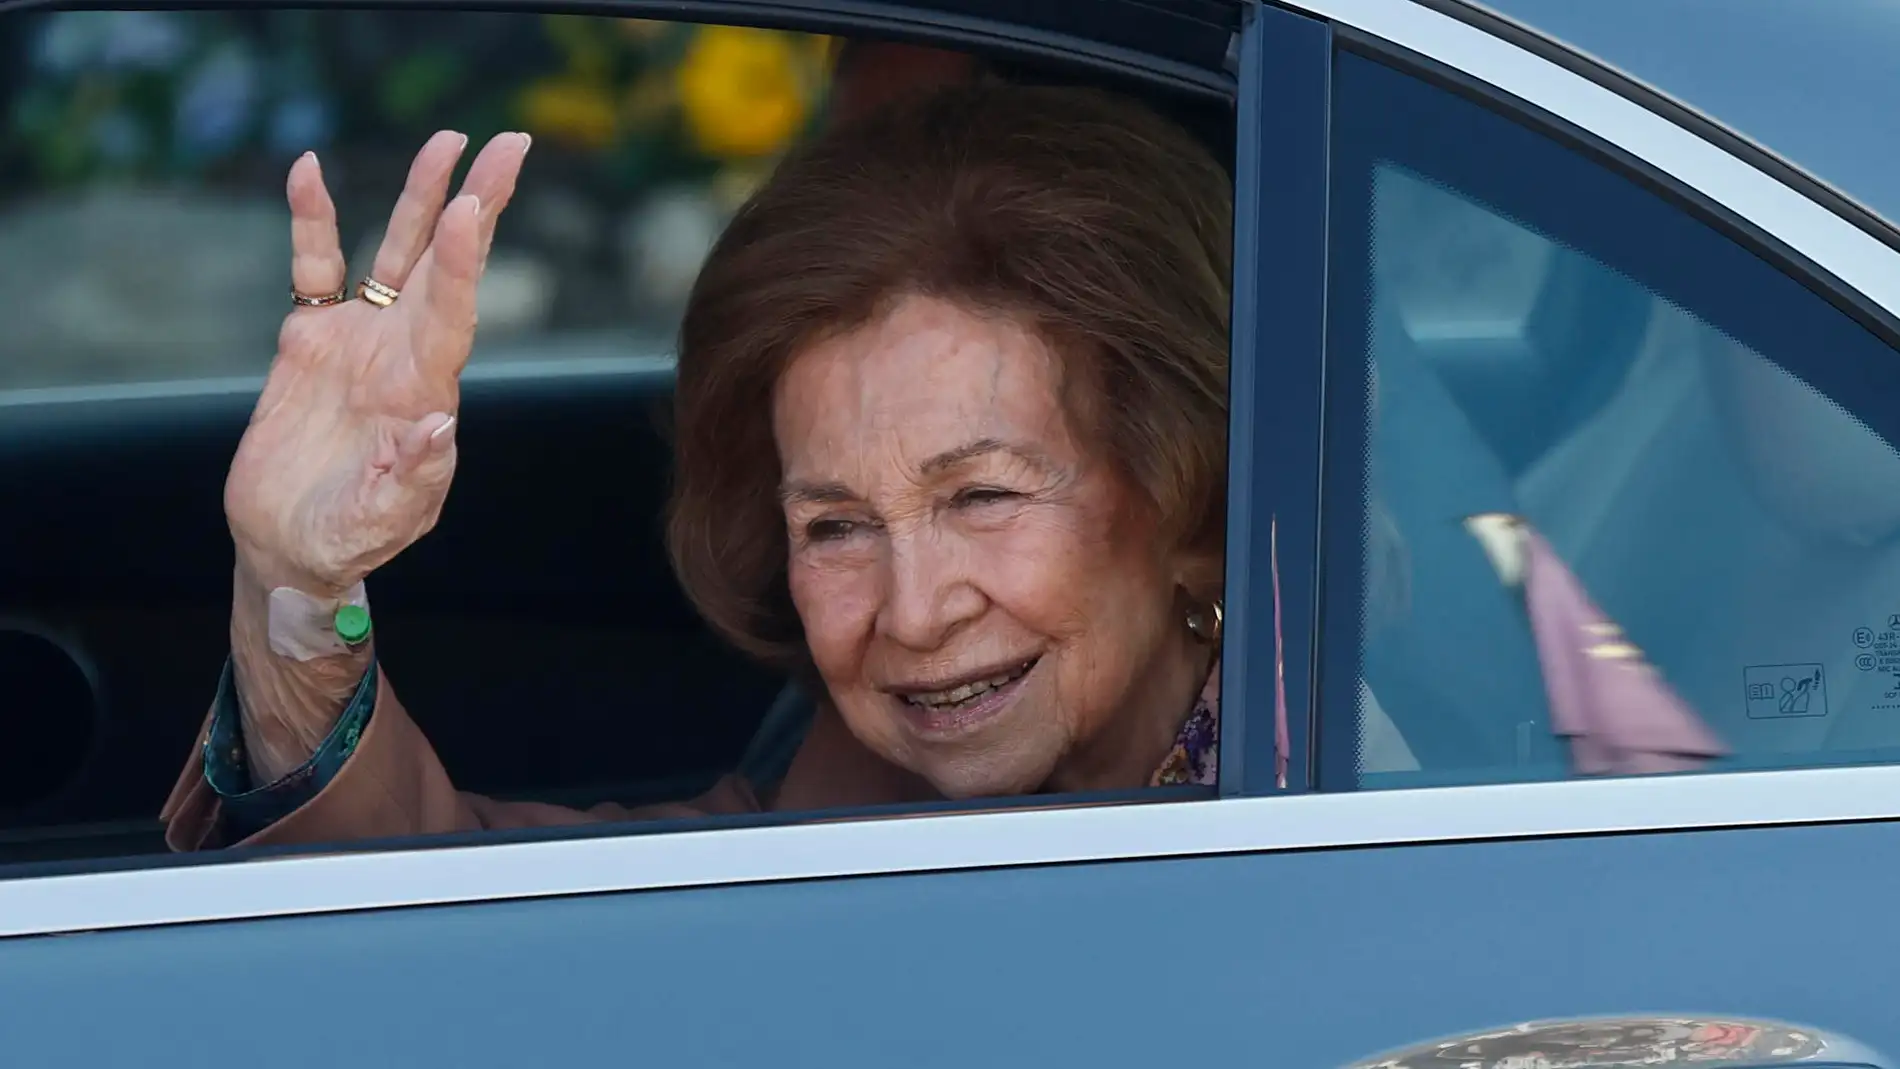 La reina Sofía saluda a la prensa a su salida de la clínica Ruber tras su ingreso por una infección.